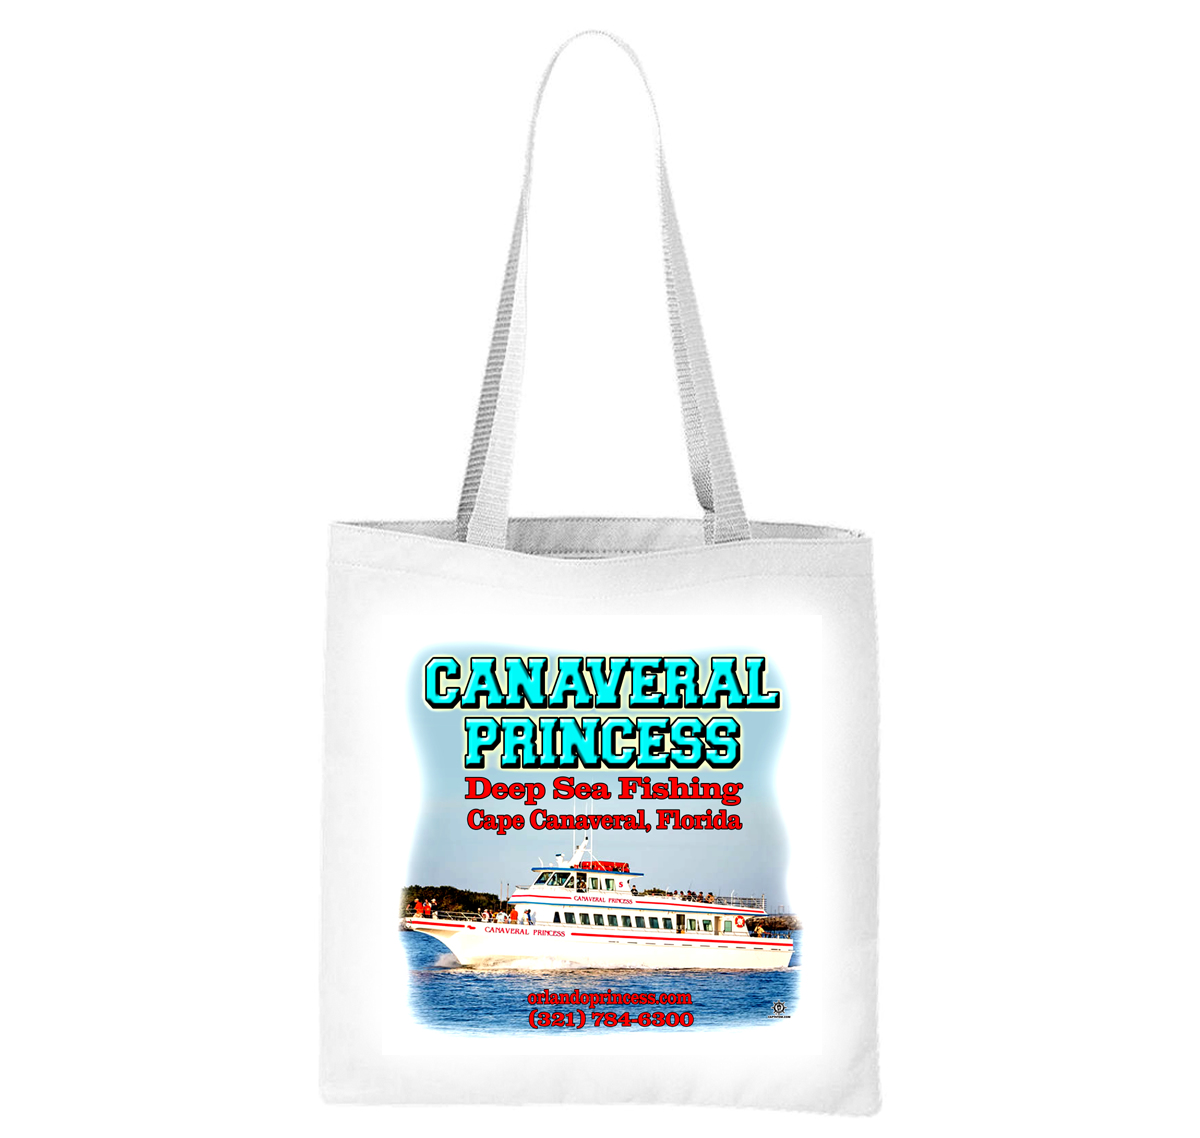 Canaveral Princess Deep Sea Fishing Liberty Bag